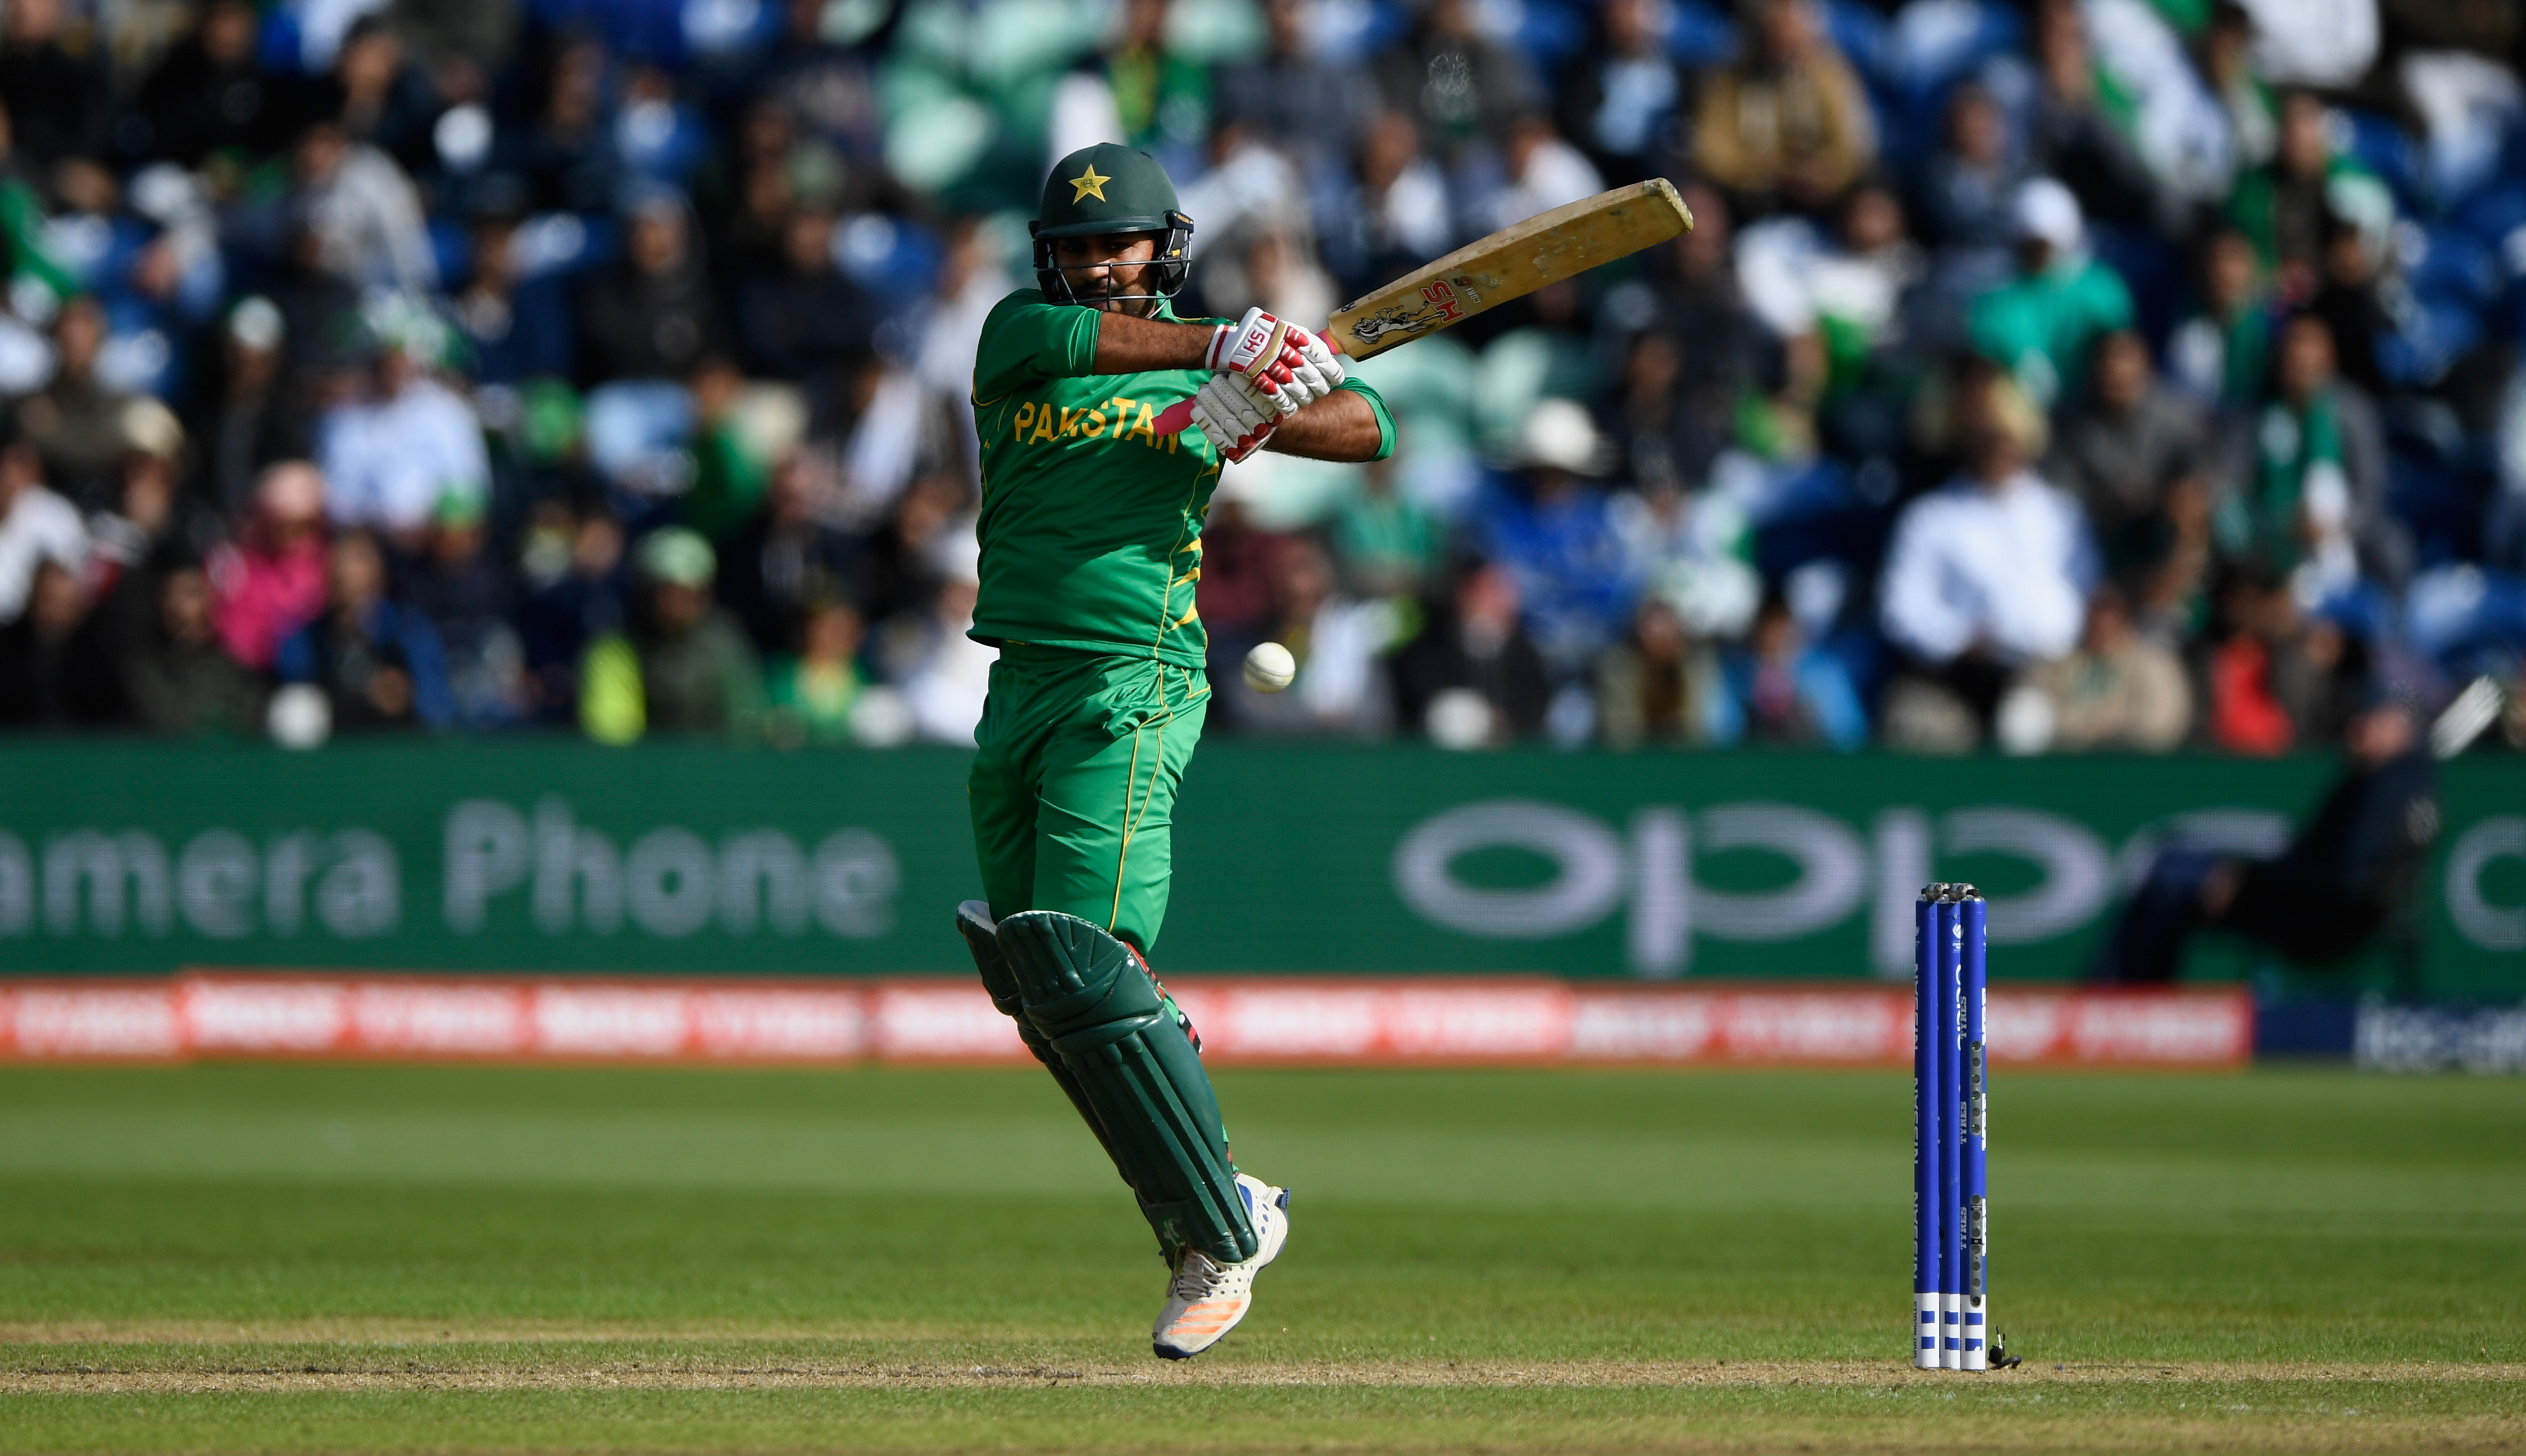 Sarfraz Ahmed named Pakistan's Test captain